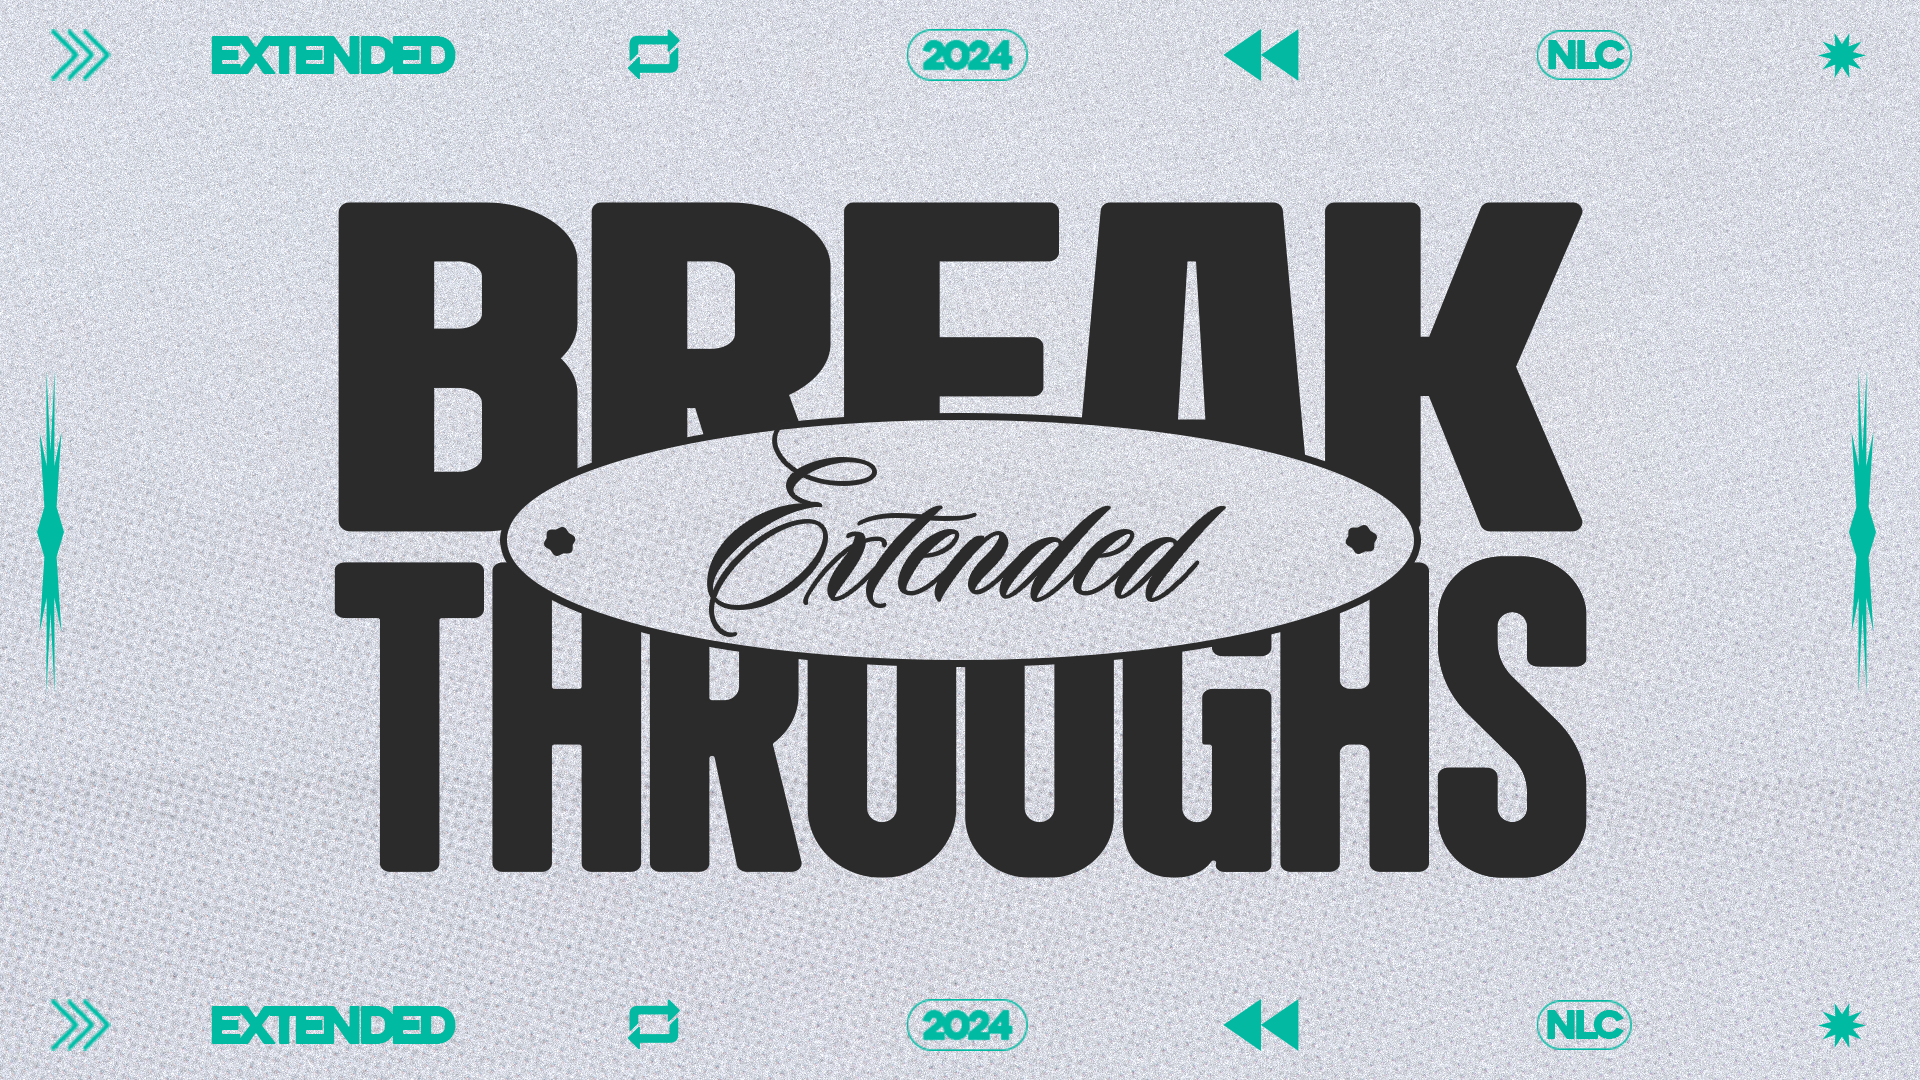 2024: Breakthroughs Extended (Pt.2)